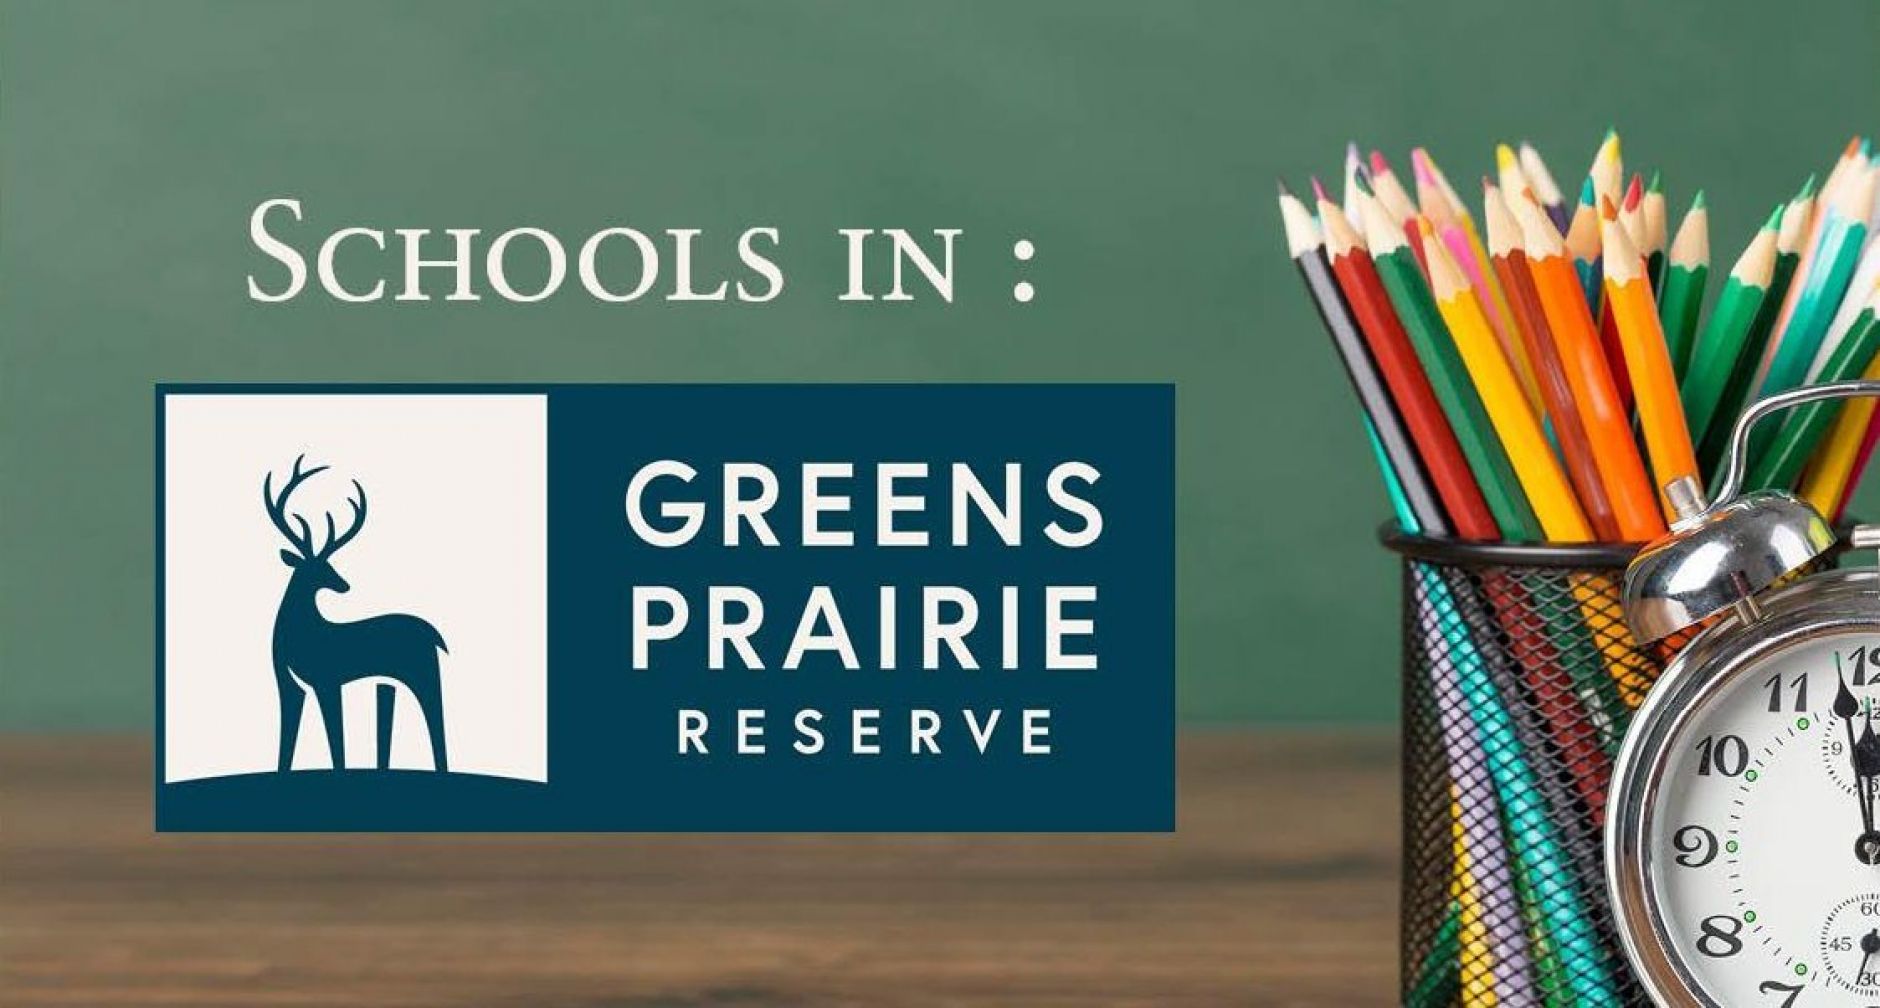 Schools in Greens Prairie Reserve